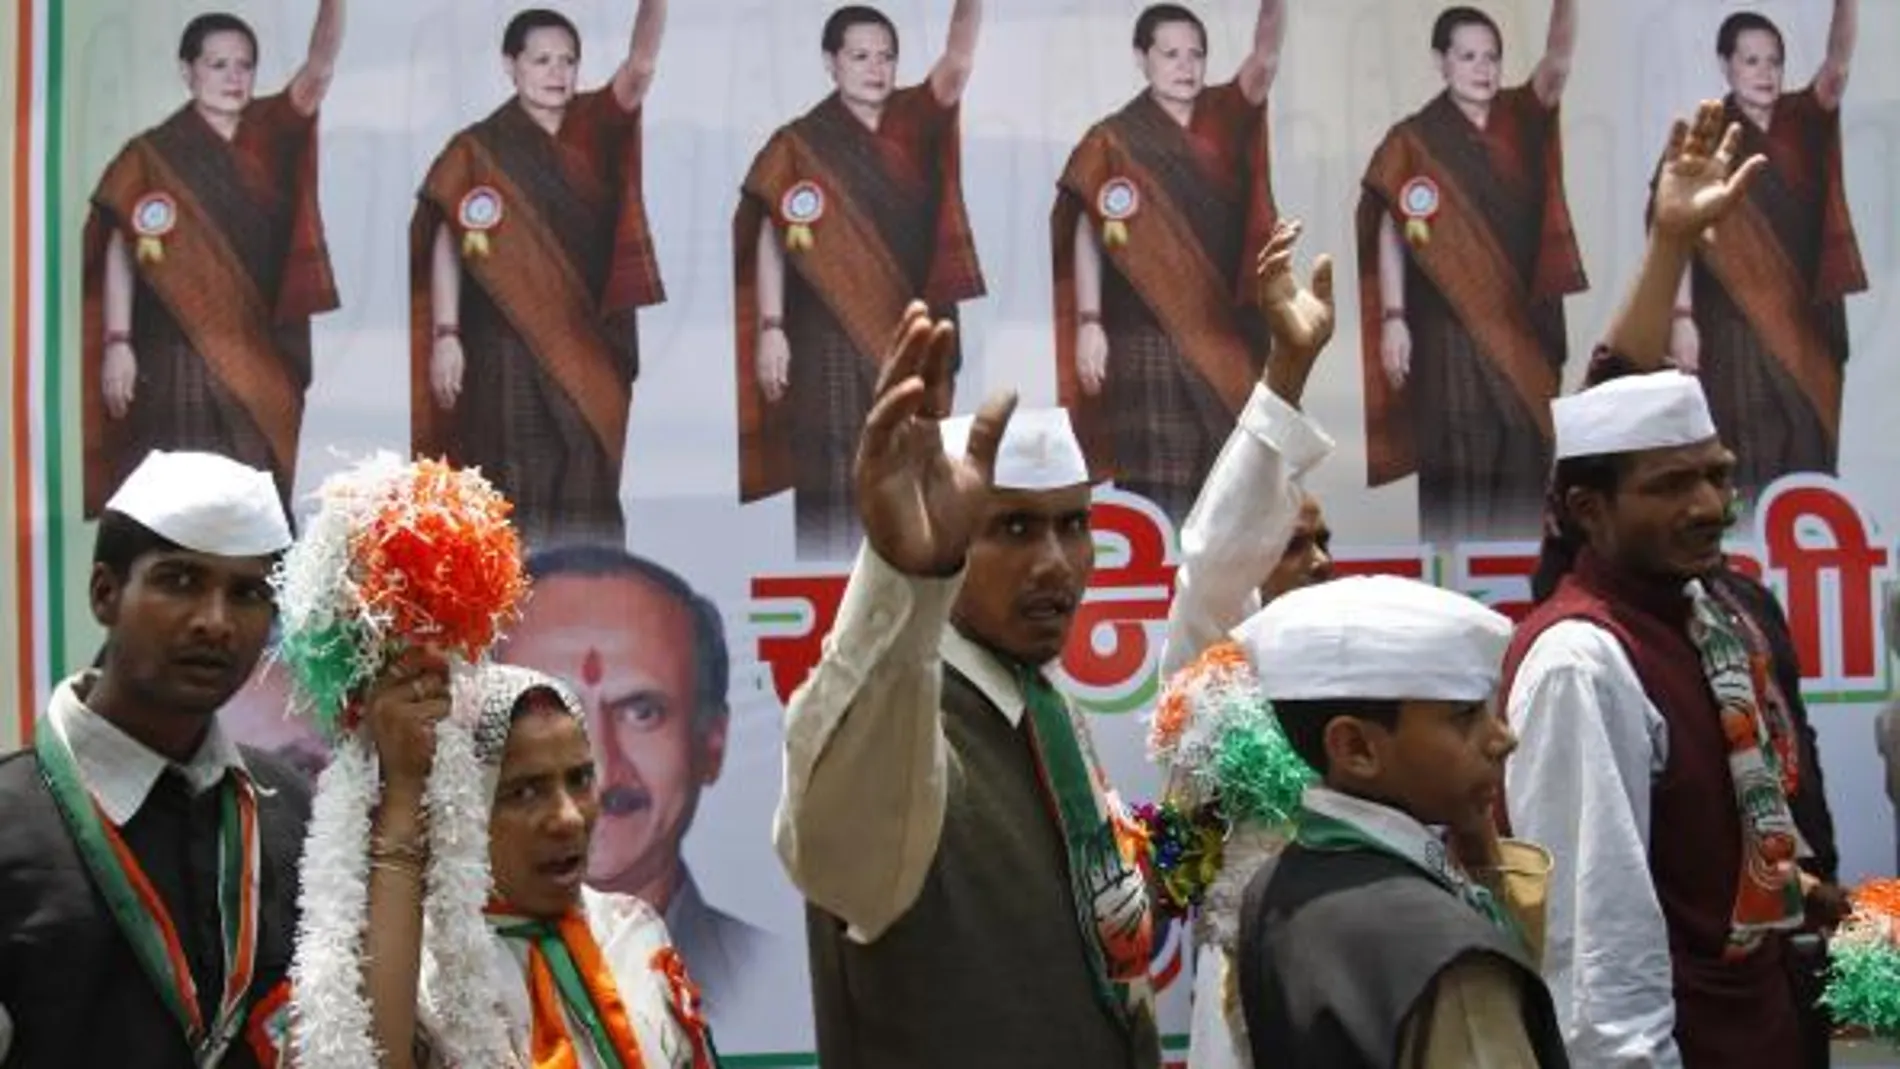 El partido de Sonia Gandhi se impone con solvencia en las elecciones indias